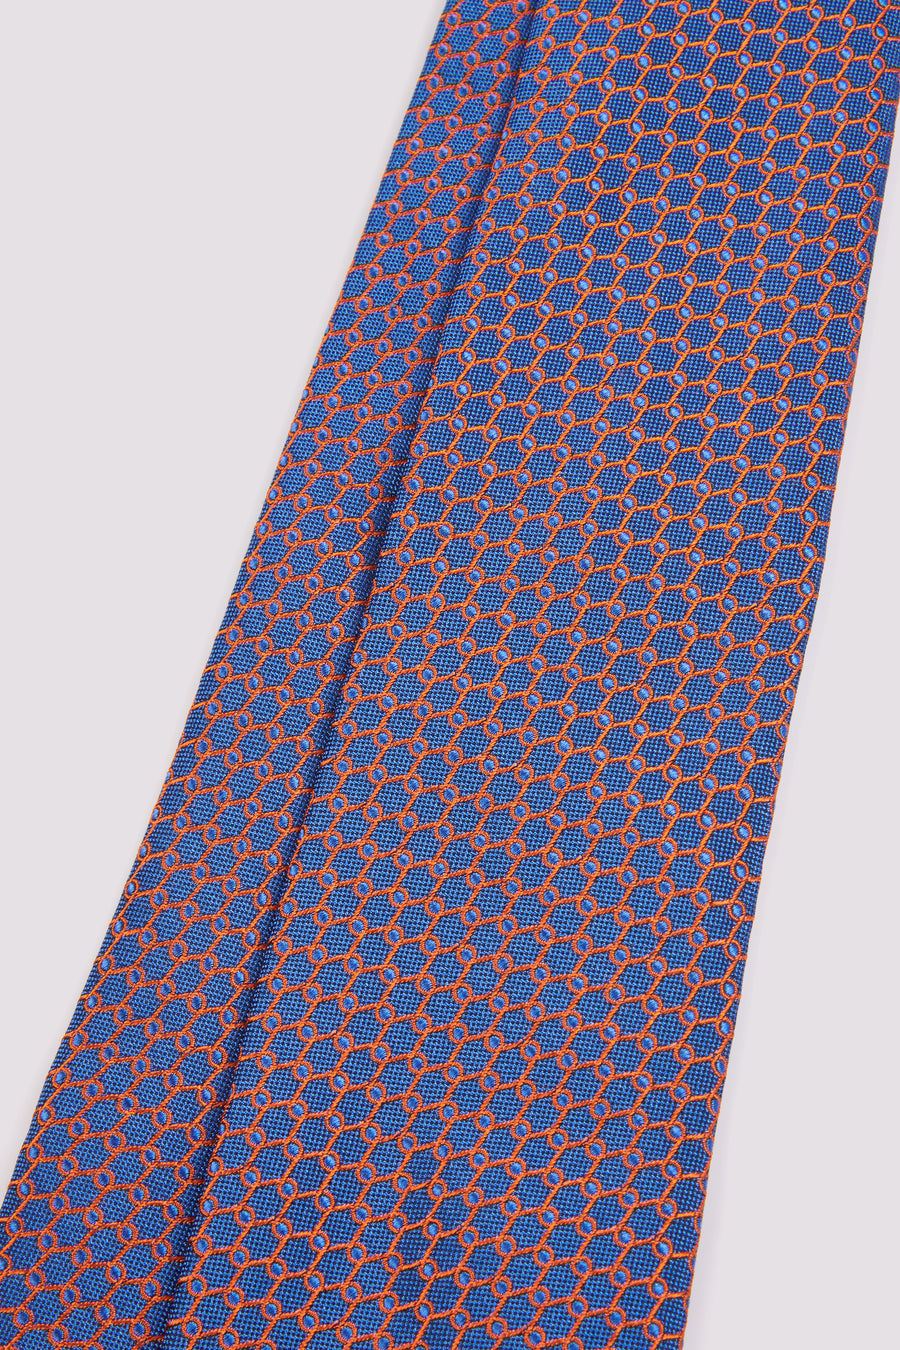 100% Silk Loop Pattern Tie in French Navy